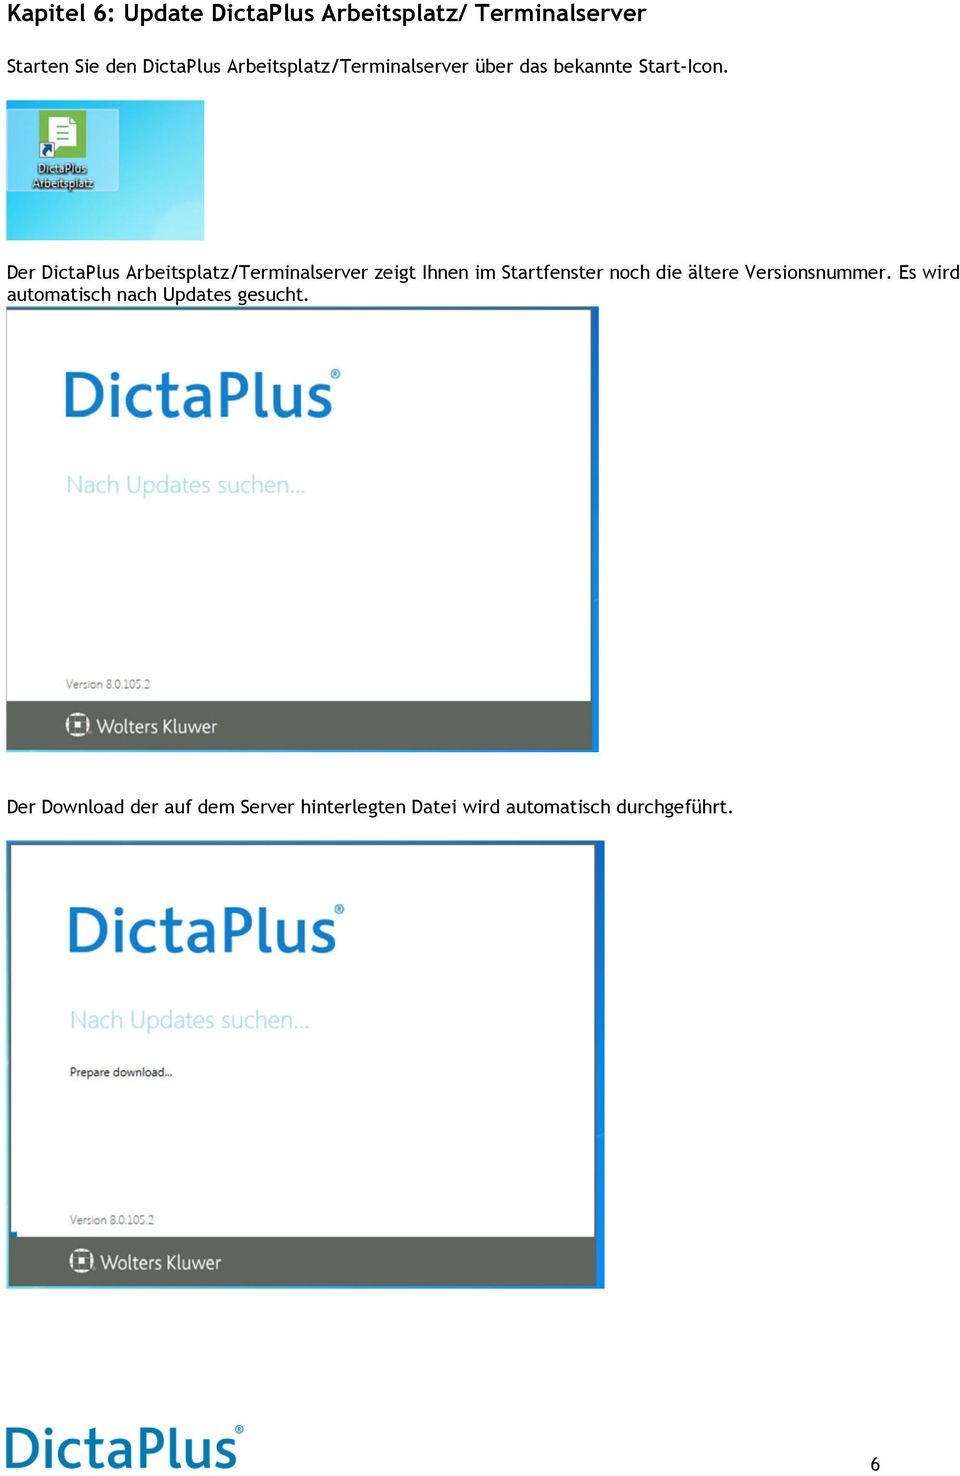 Der DictaPlus Arbeitsplatz/Terminalserver zeigt Ihnen im Startfenster noch die ältere